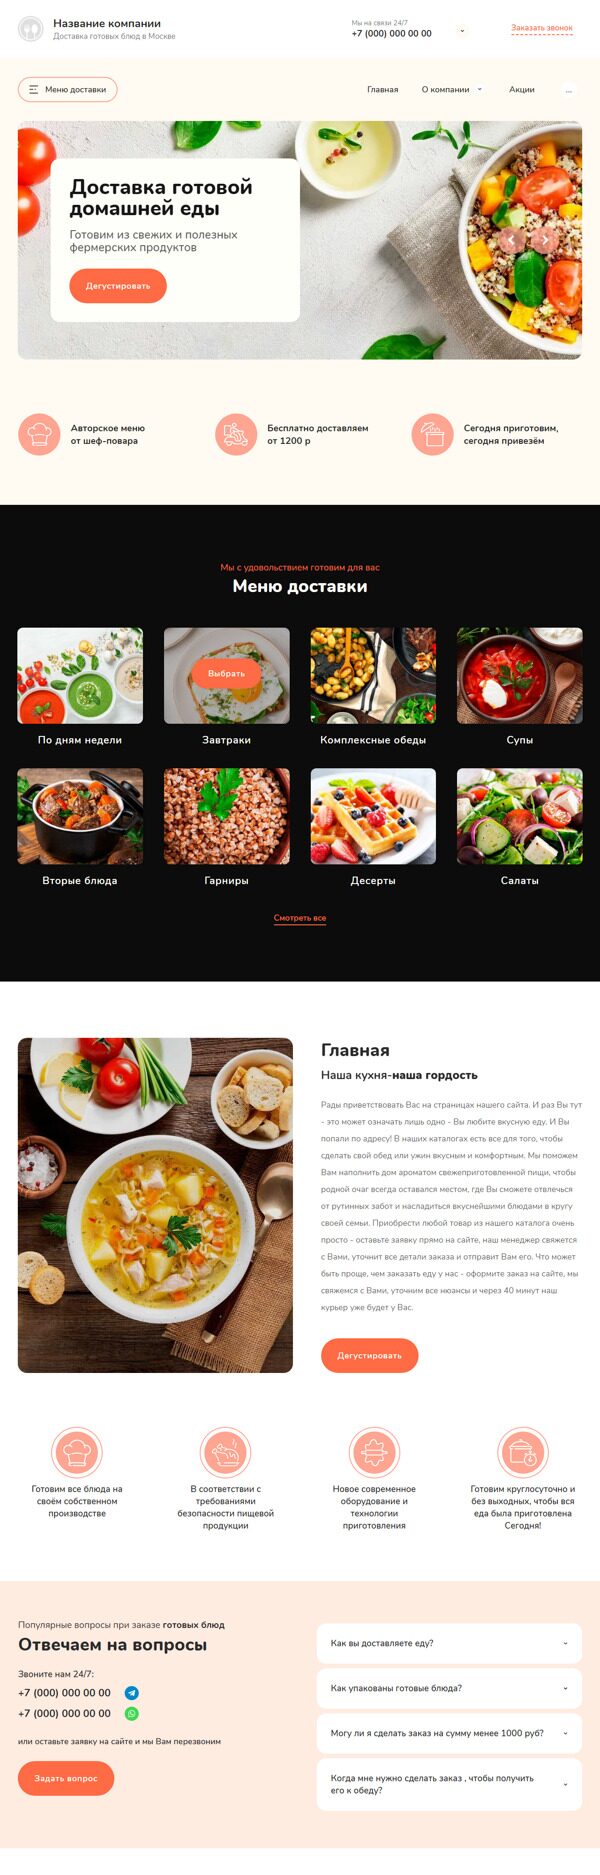 Готовый Сайт-Бизнес № 3903330 - Сайт доставки готовых блюд и еды (Десктопная версия)